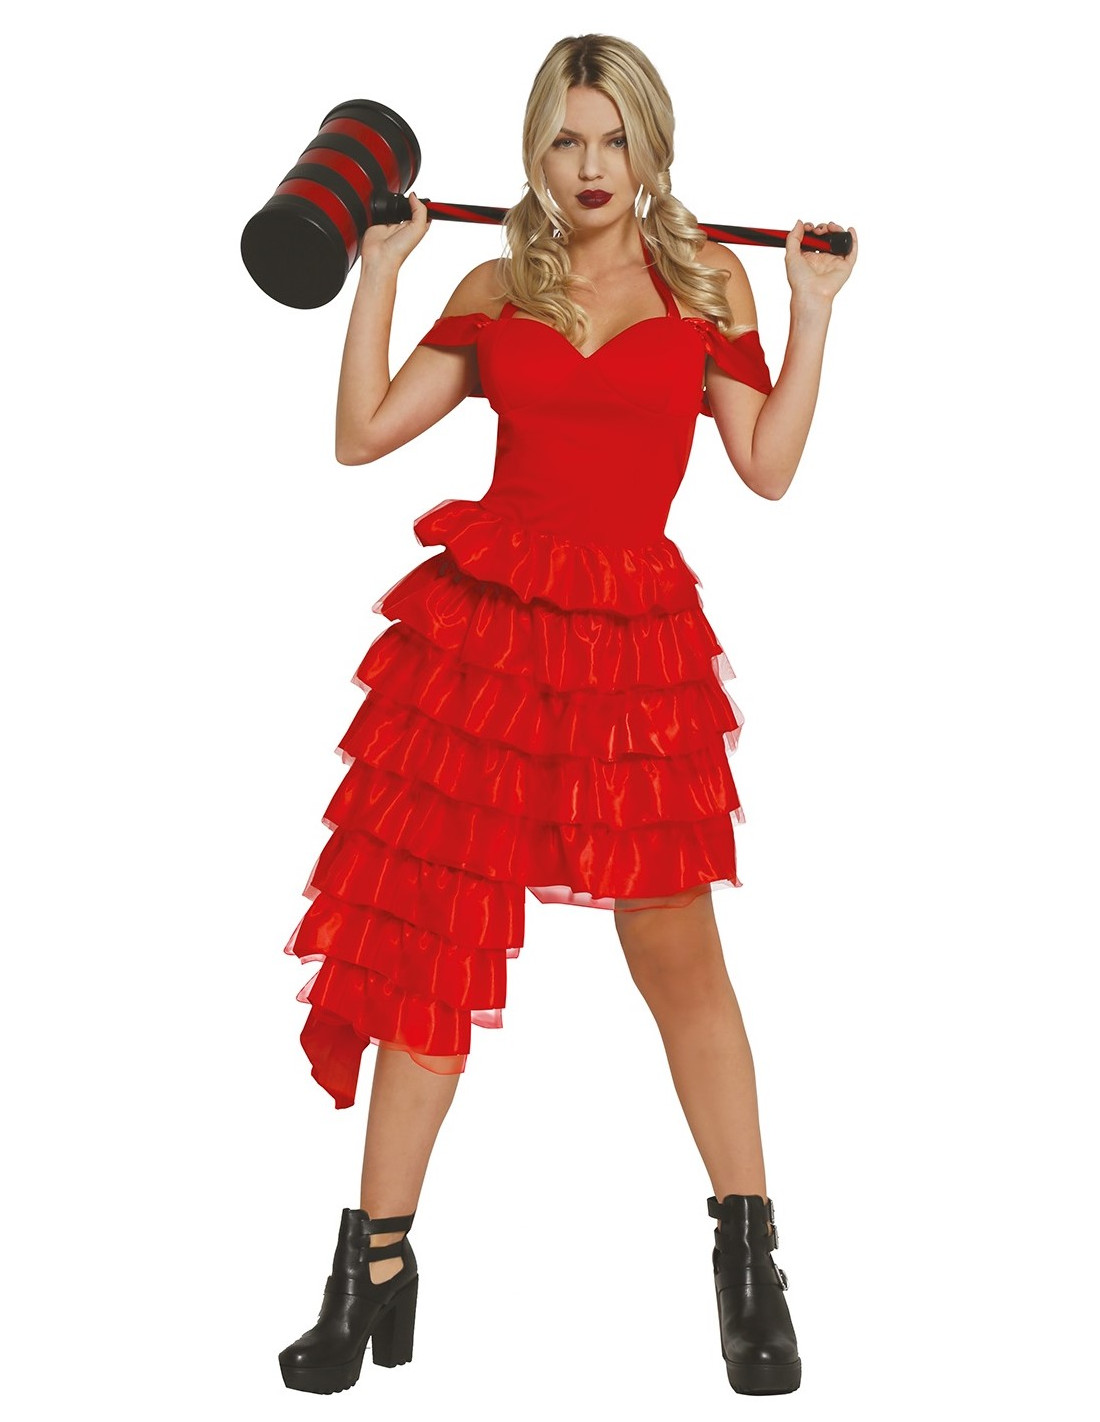 7 Disfraces de Halloween Caseros para Mujer Fáciles  Halloween disfraces,  Disfraces caseros para mujer, Disfraces caperucita roja mujer